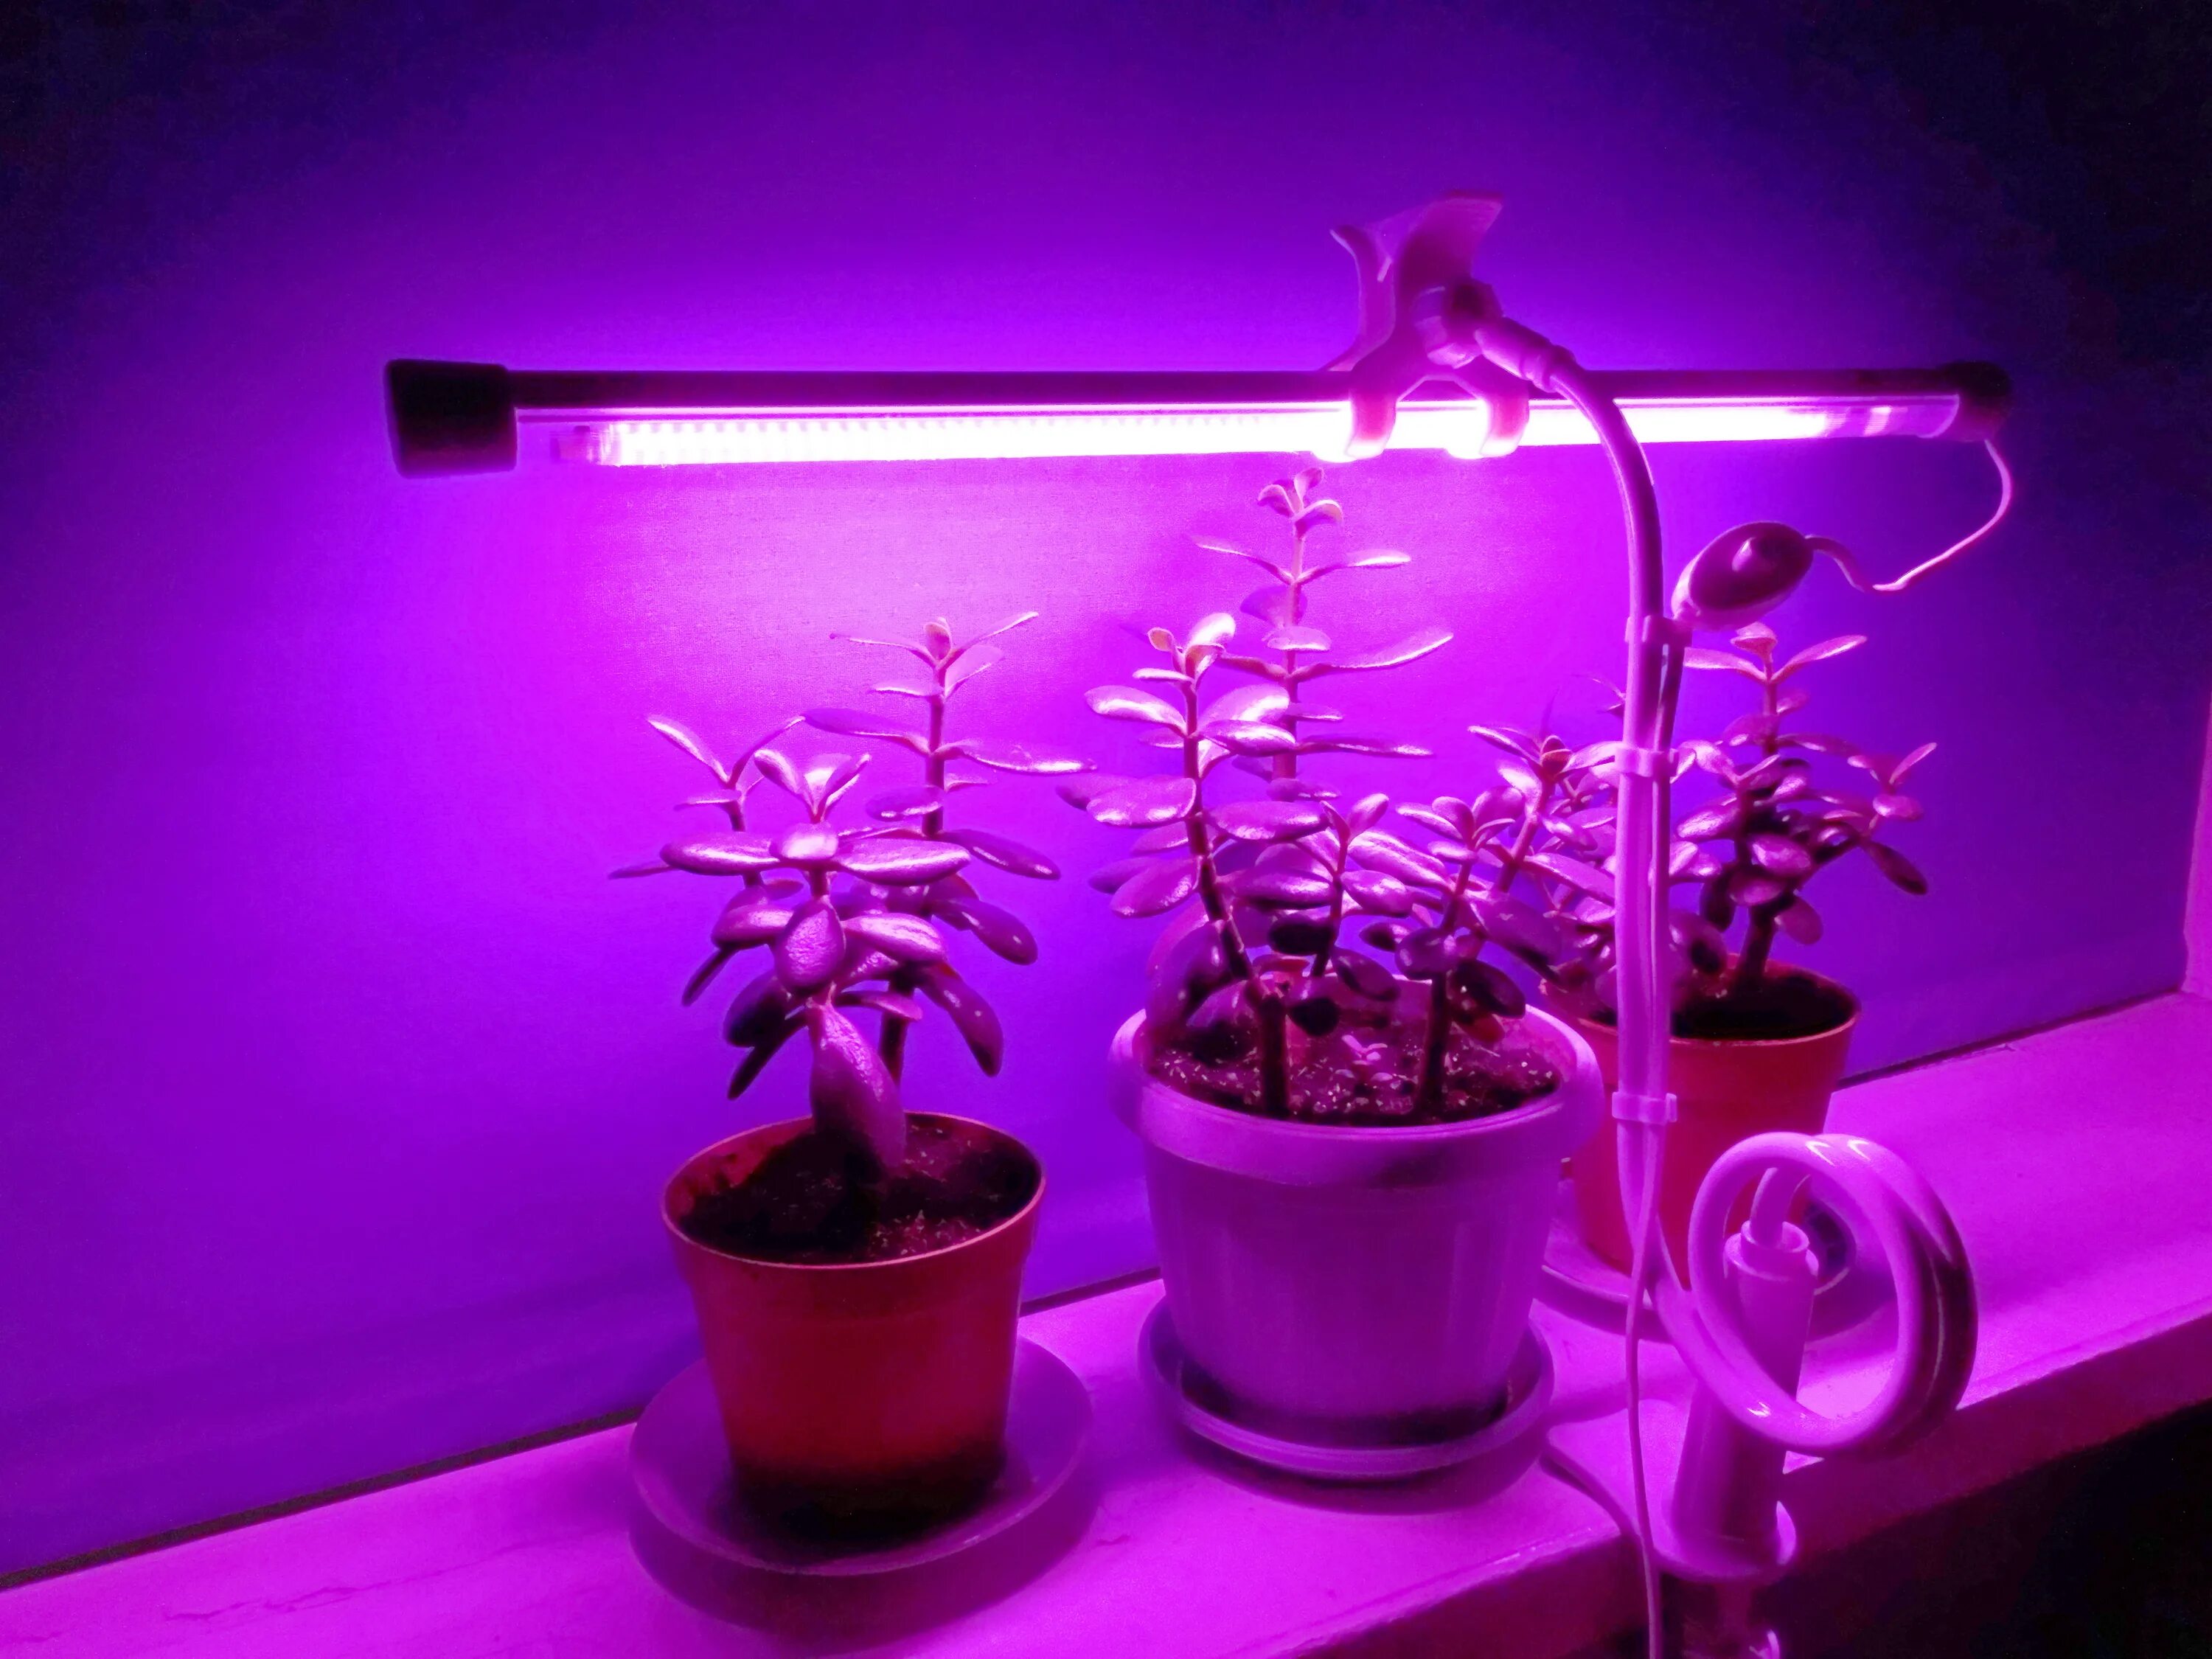 Фито светильник для растений. "Полный спектр - 20 ватт". Фитосветильник «растущий светильник фито f1 16 Вт». Фитосветильник линейный 10w 567мм VKL VLED-Fito-lt5-10w (фиолетовый спектр). Фитосветильник для растений led 60 см., 10 Вт. Купить подсветку для цветов